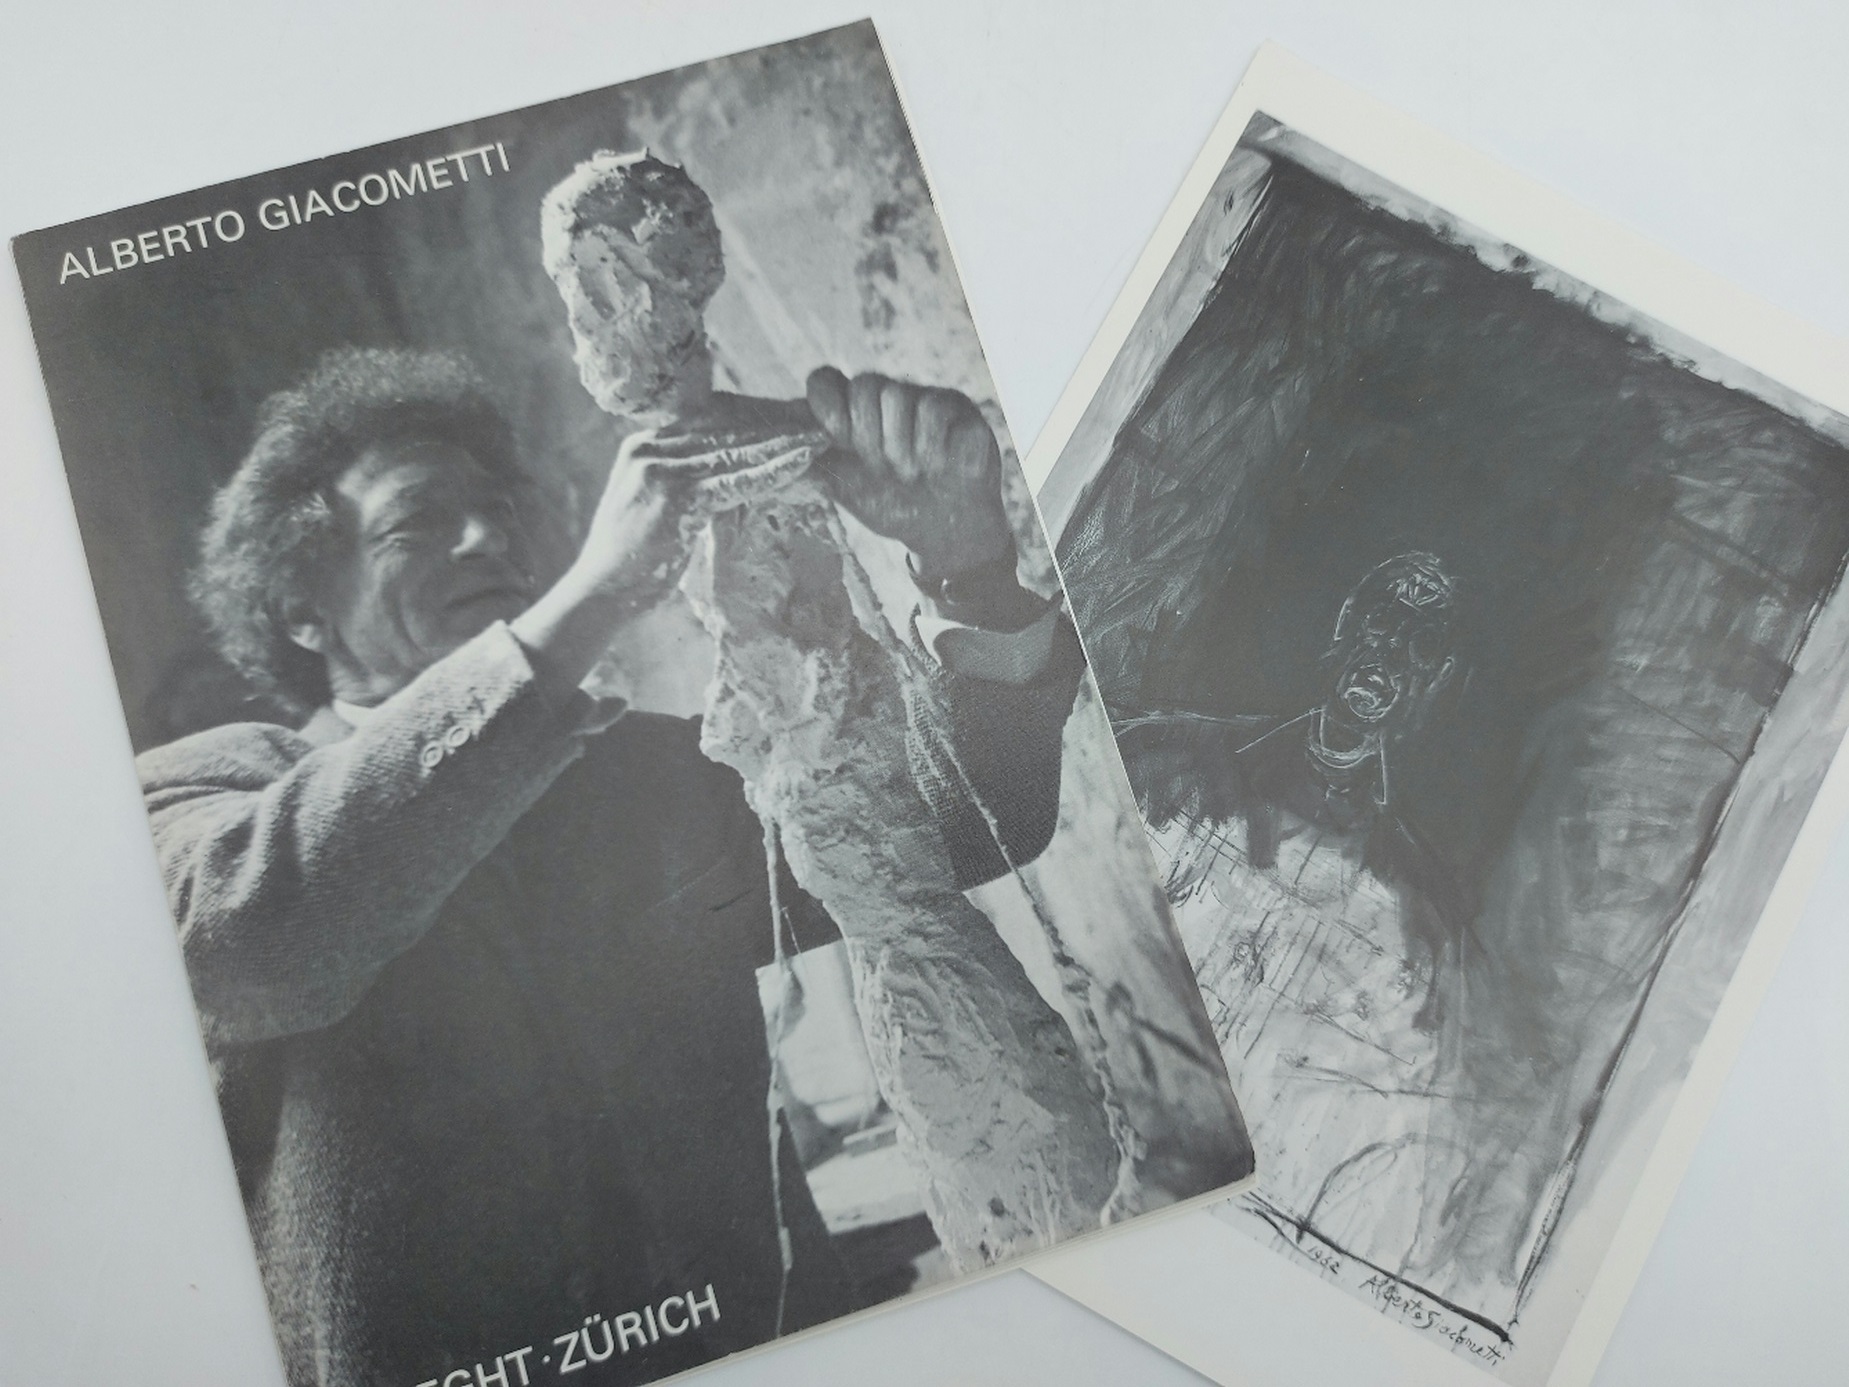 Alberto Giacometti. Skulpturen, bilder, zeichnungen. Galerie Maeght, Zurich 1980